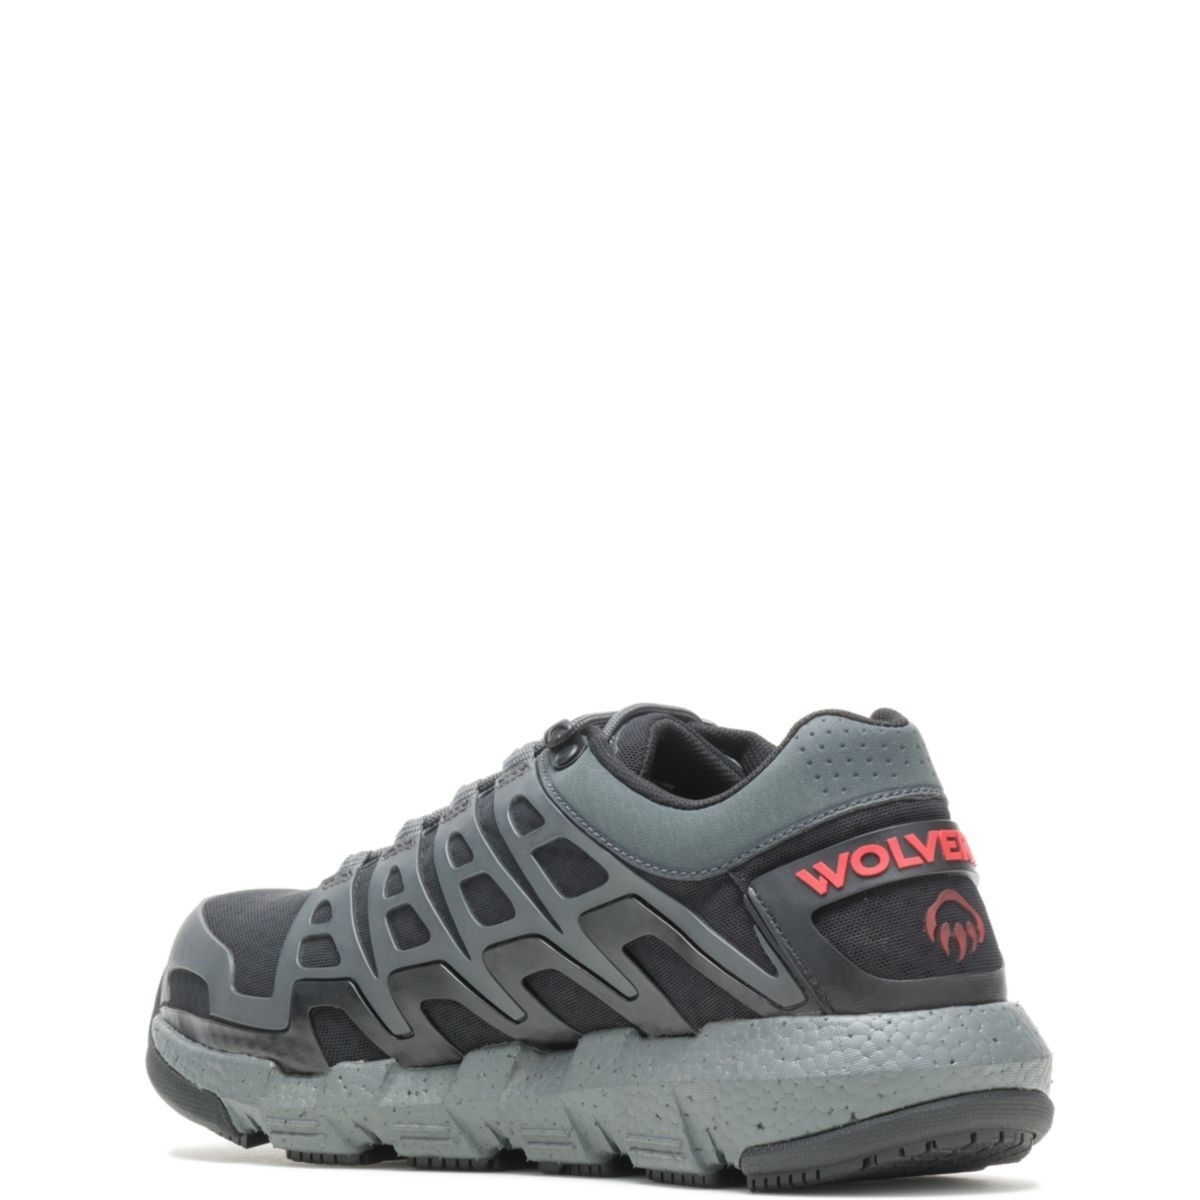 WOLVERINE Men's Rev Vent UltraSpringâ¢ DuraShocksÂ® CarbonMAXÂ® Composite Toe Work Shoe Charcoal - W211016 CHARCOAL - CHARCOAL, 14